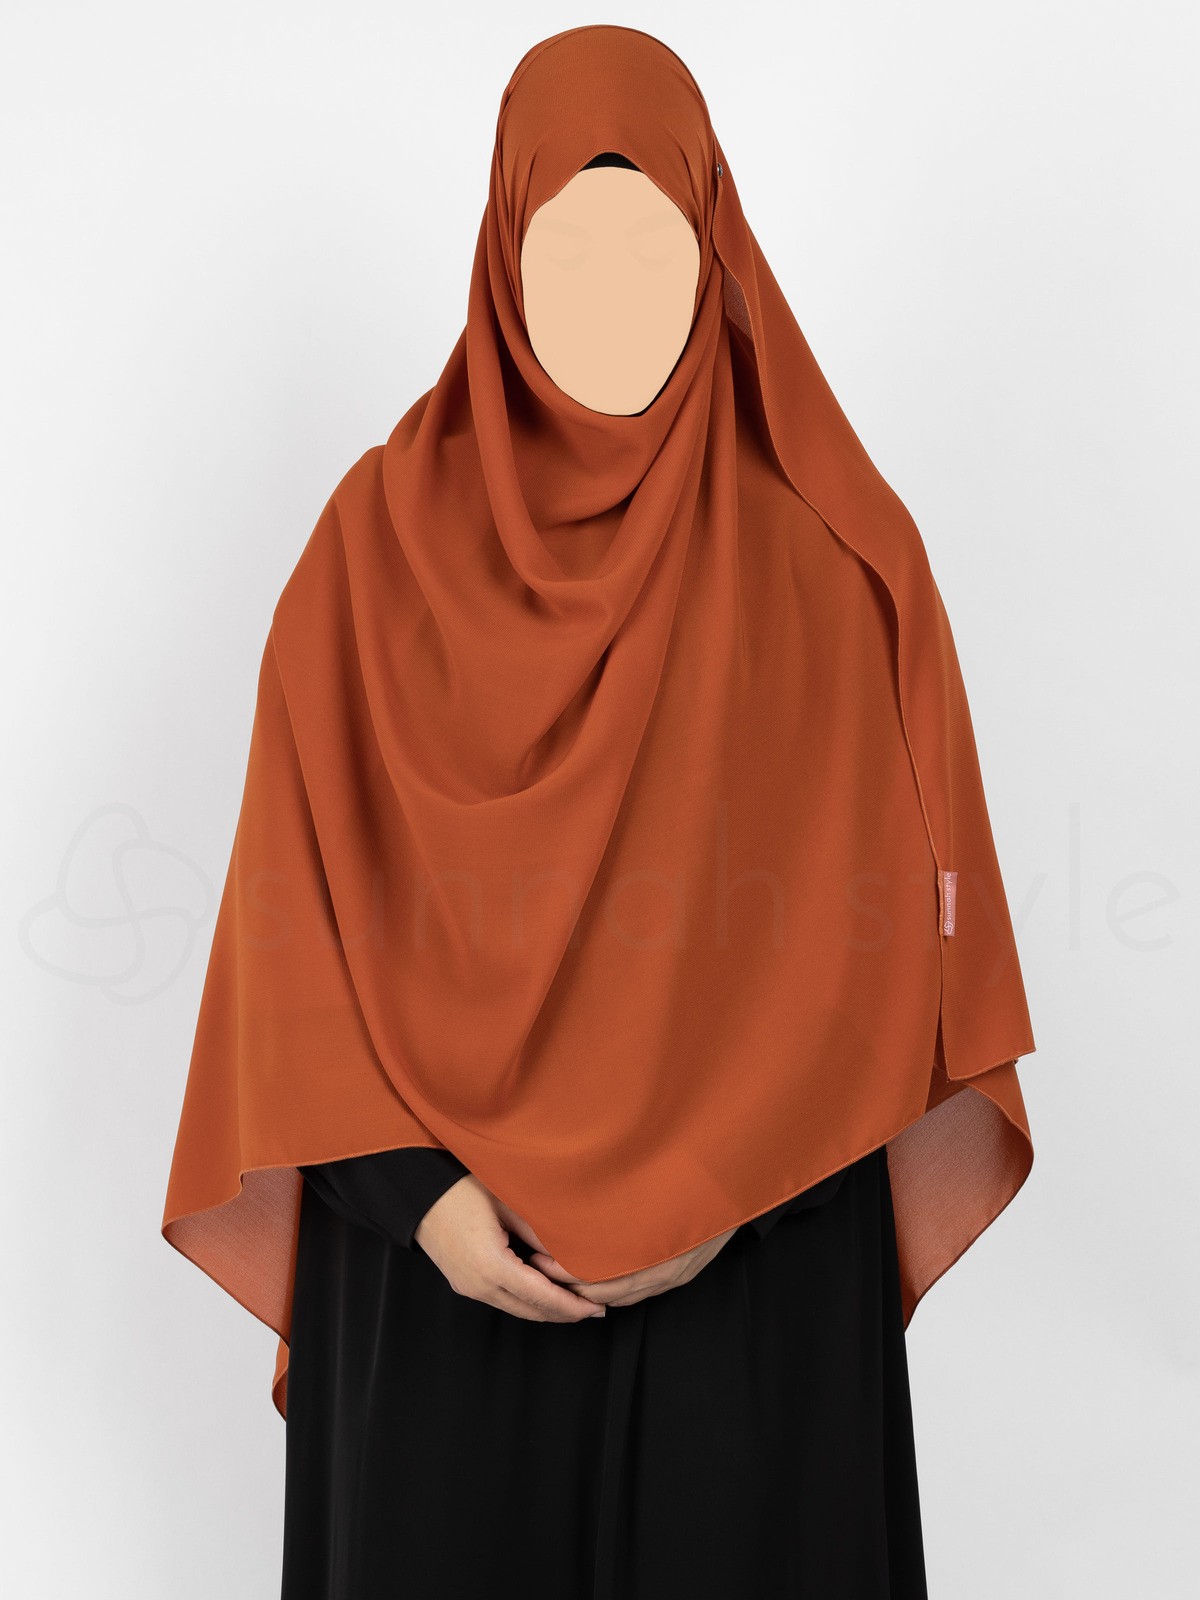 Sunnah Style - Essentials Shayla (Chiffon) - XL (Dark Grey)